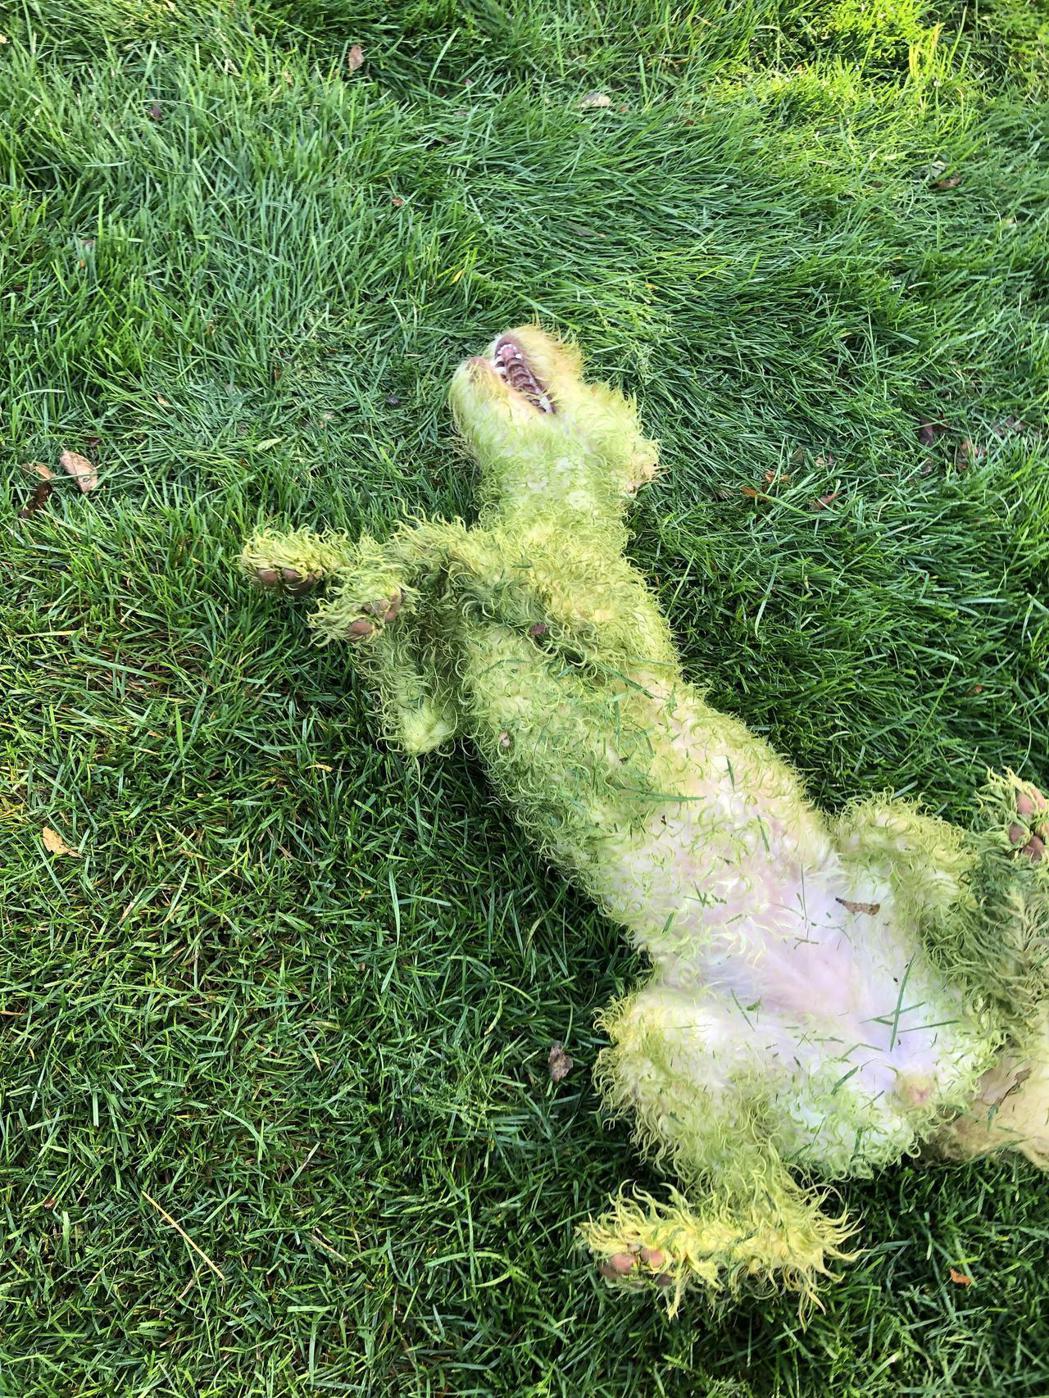 一隻全身上下都被染成綠色的狗倒在草地上一動也不動，只剩下腹部少許白毛，讓不少網友猜測這到底是怎回事。 (圖/取自Reddit)